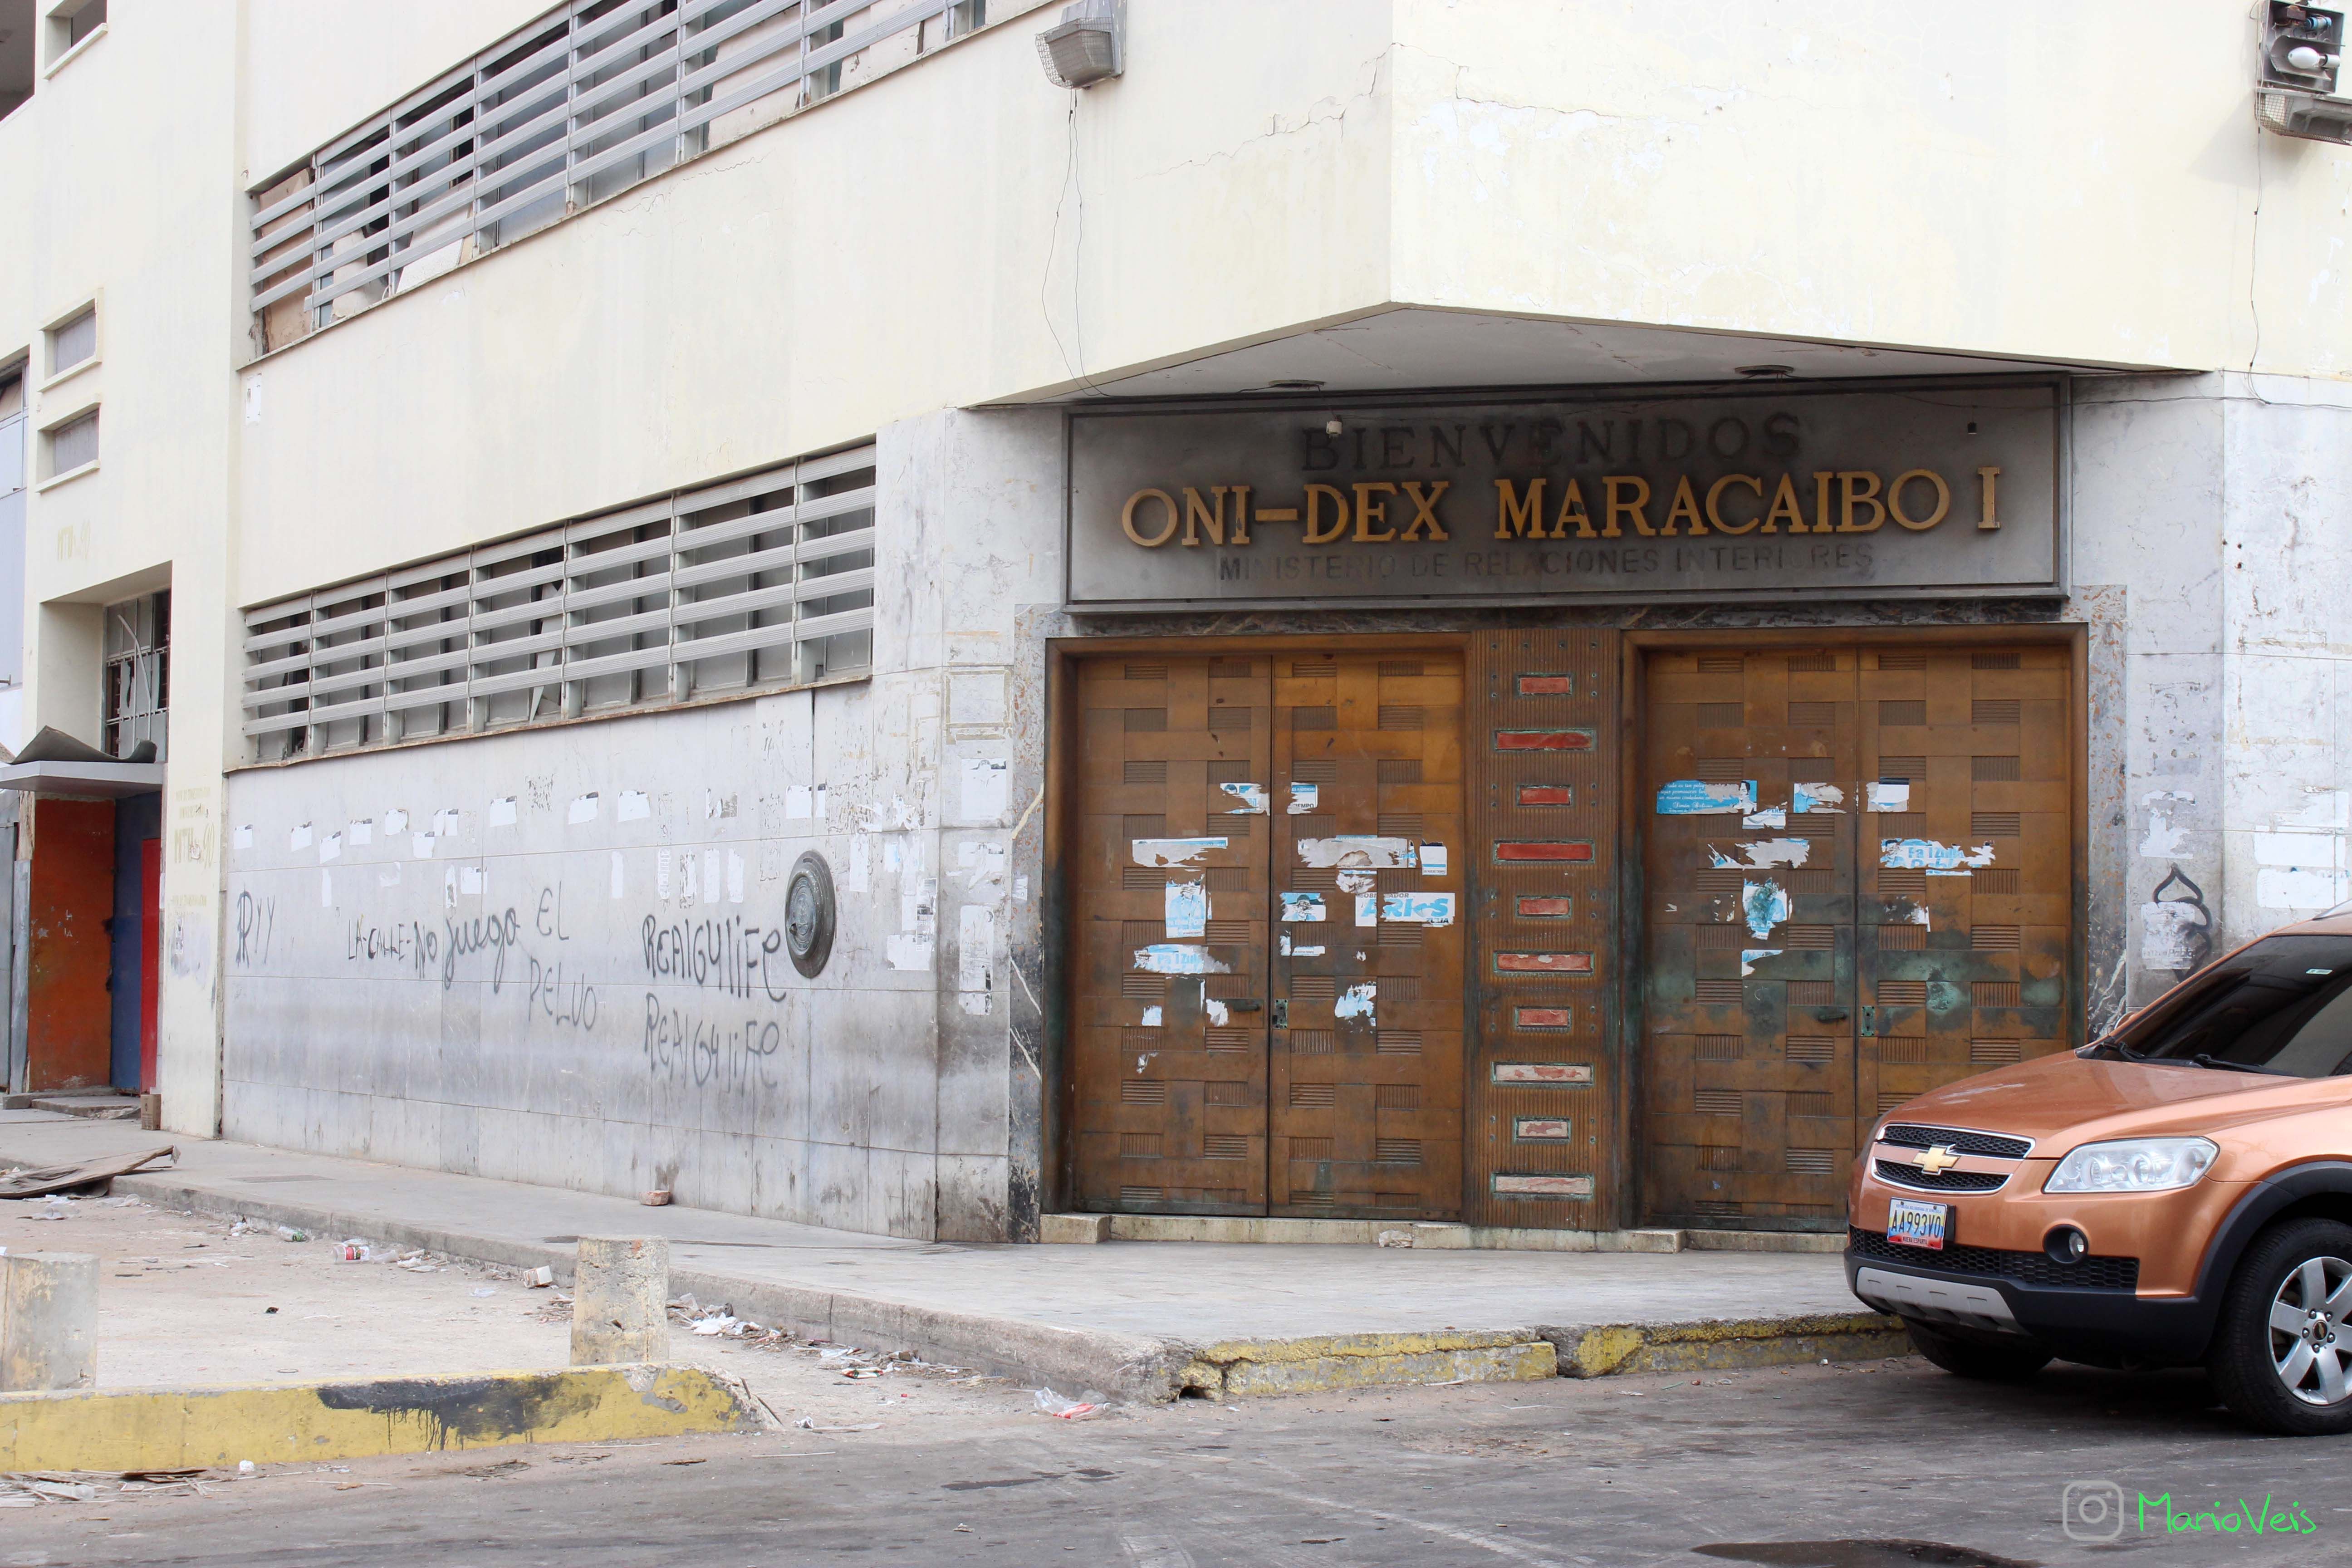 Puertas de la antigua casa matriz del Banco de Maracaibo.